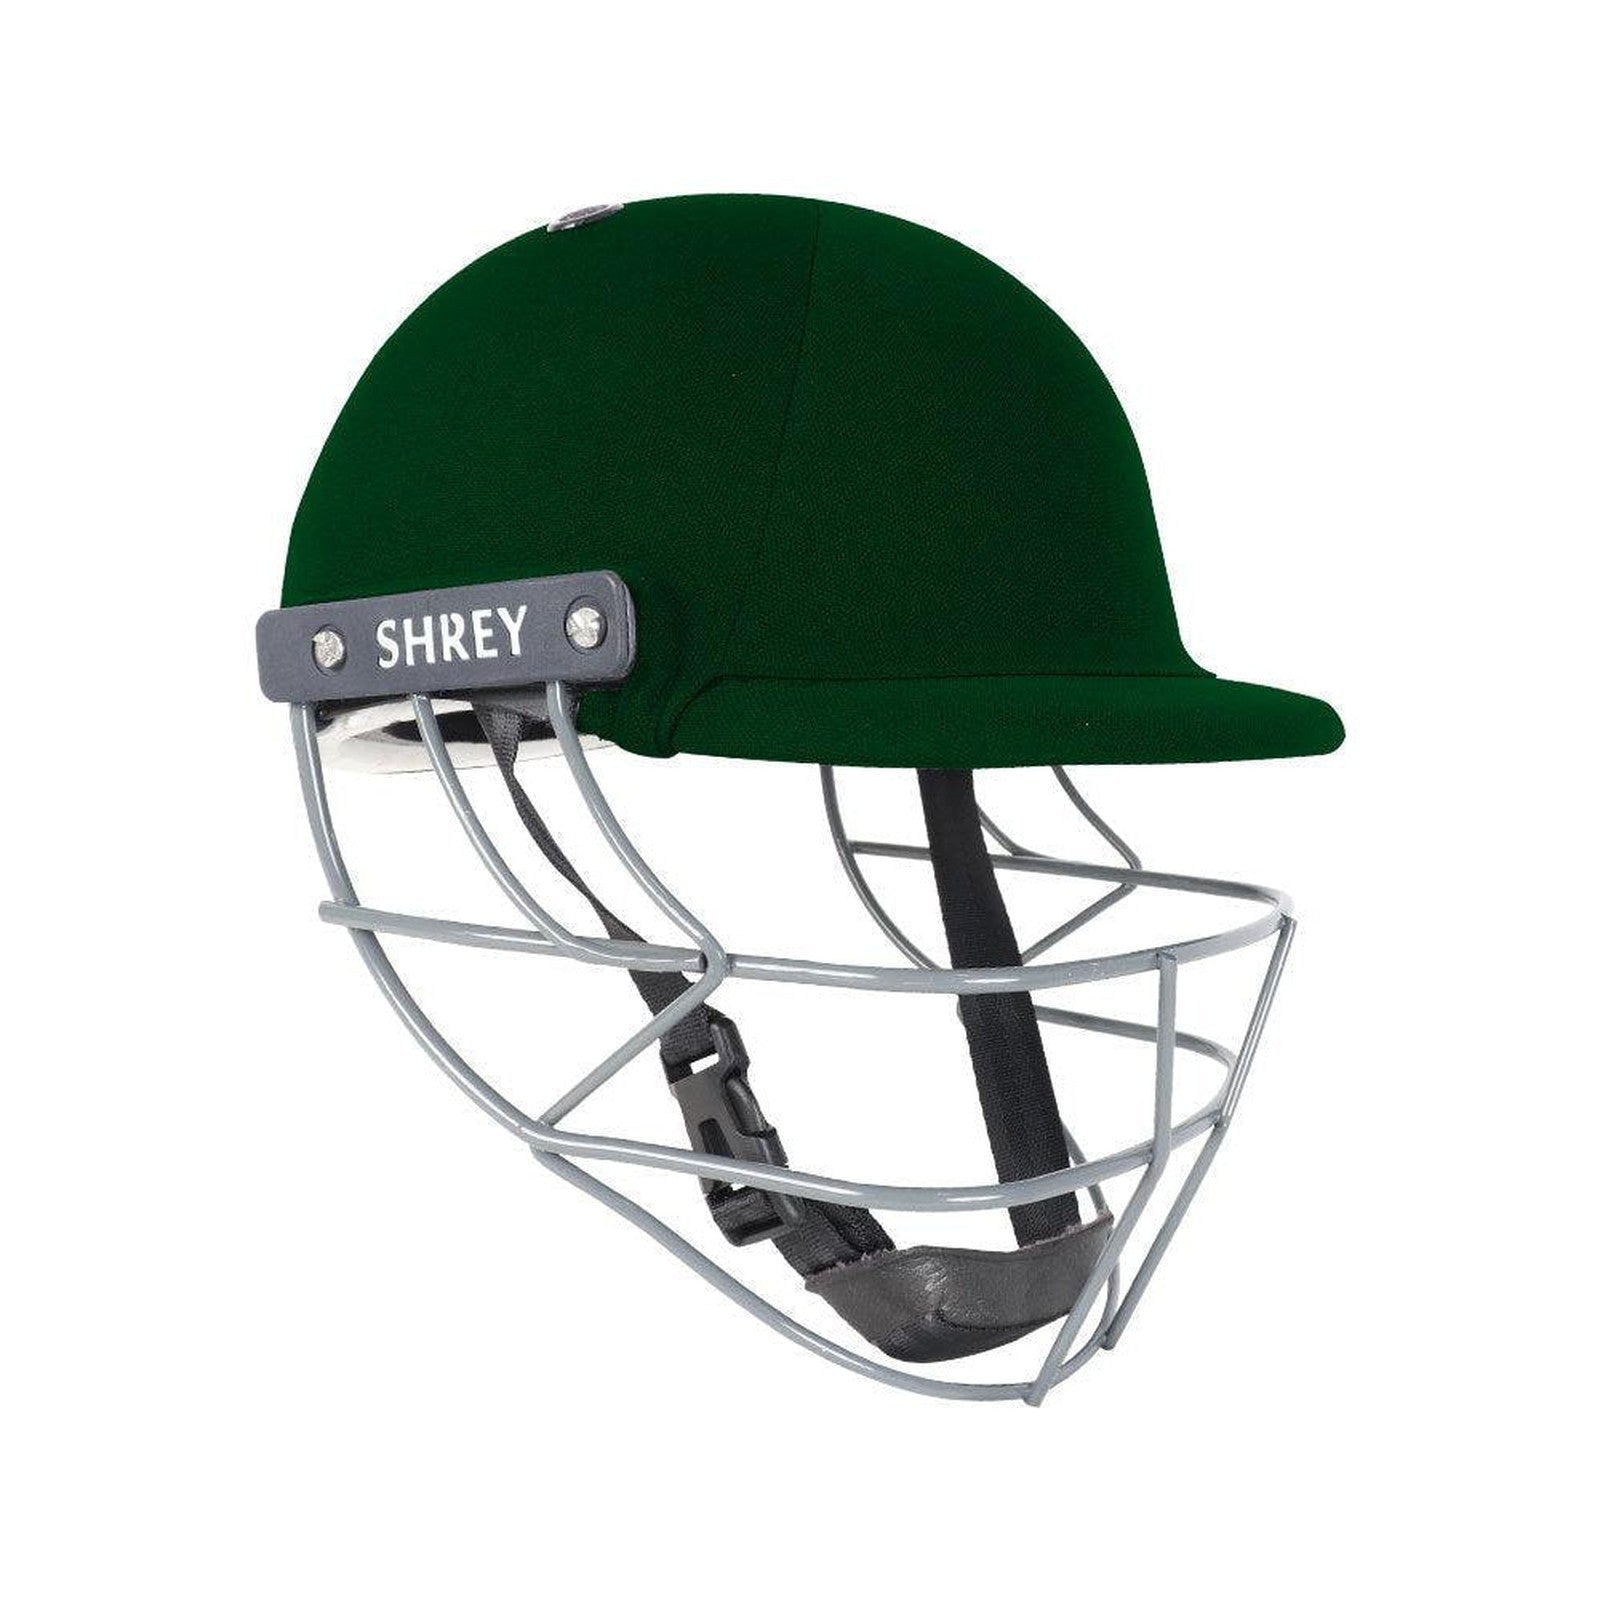 Shrey Performance 2.0 Cricket Helmet With Mild Steel - Green Junior